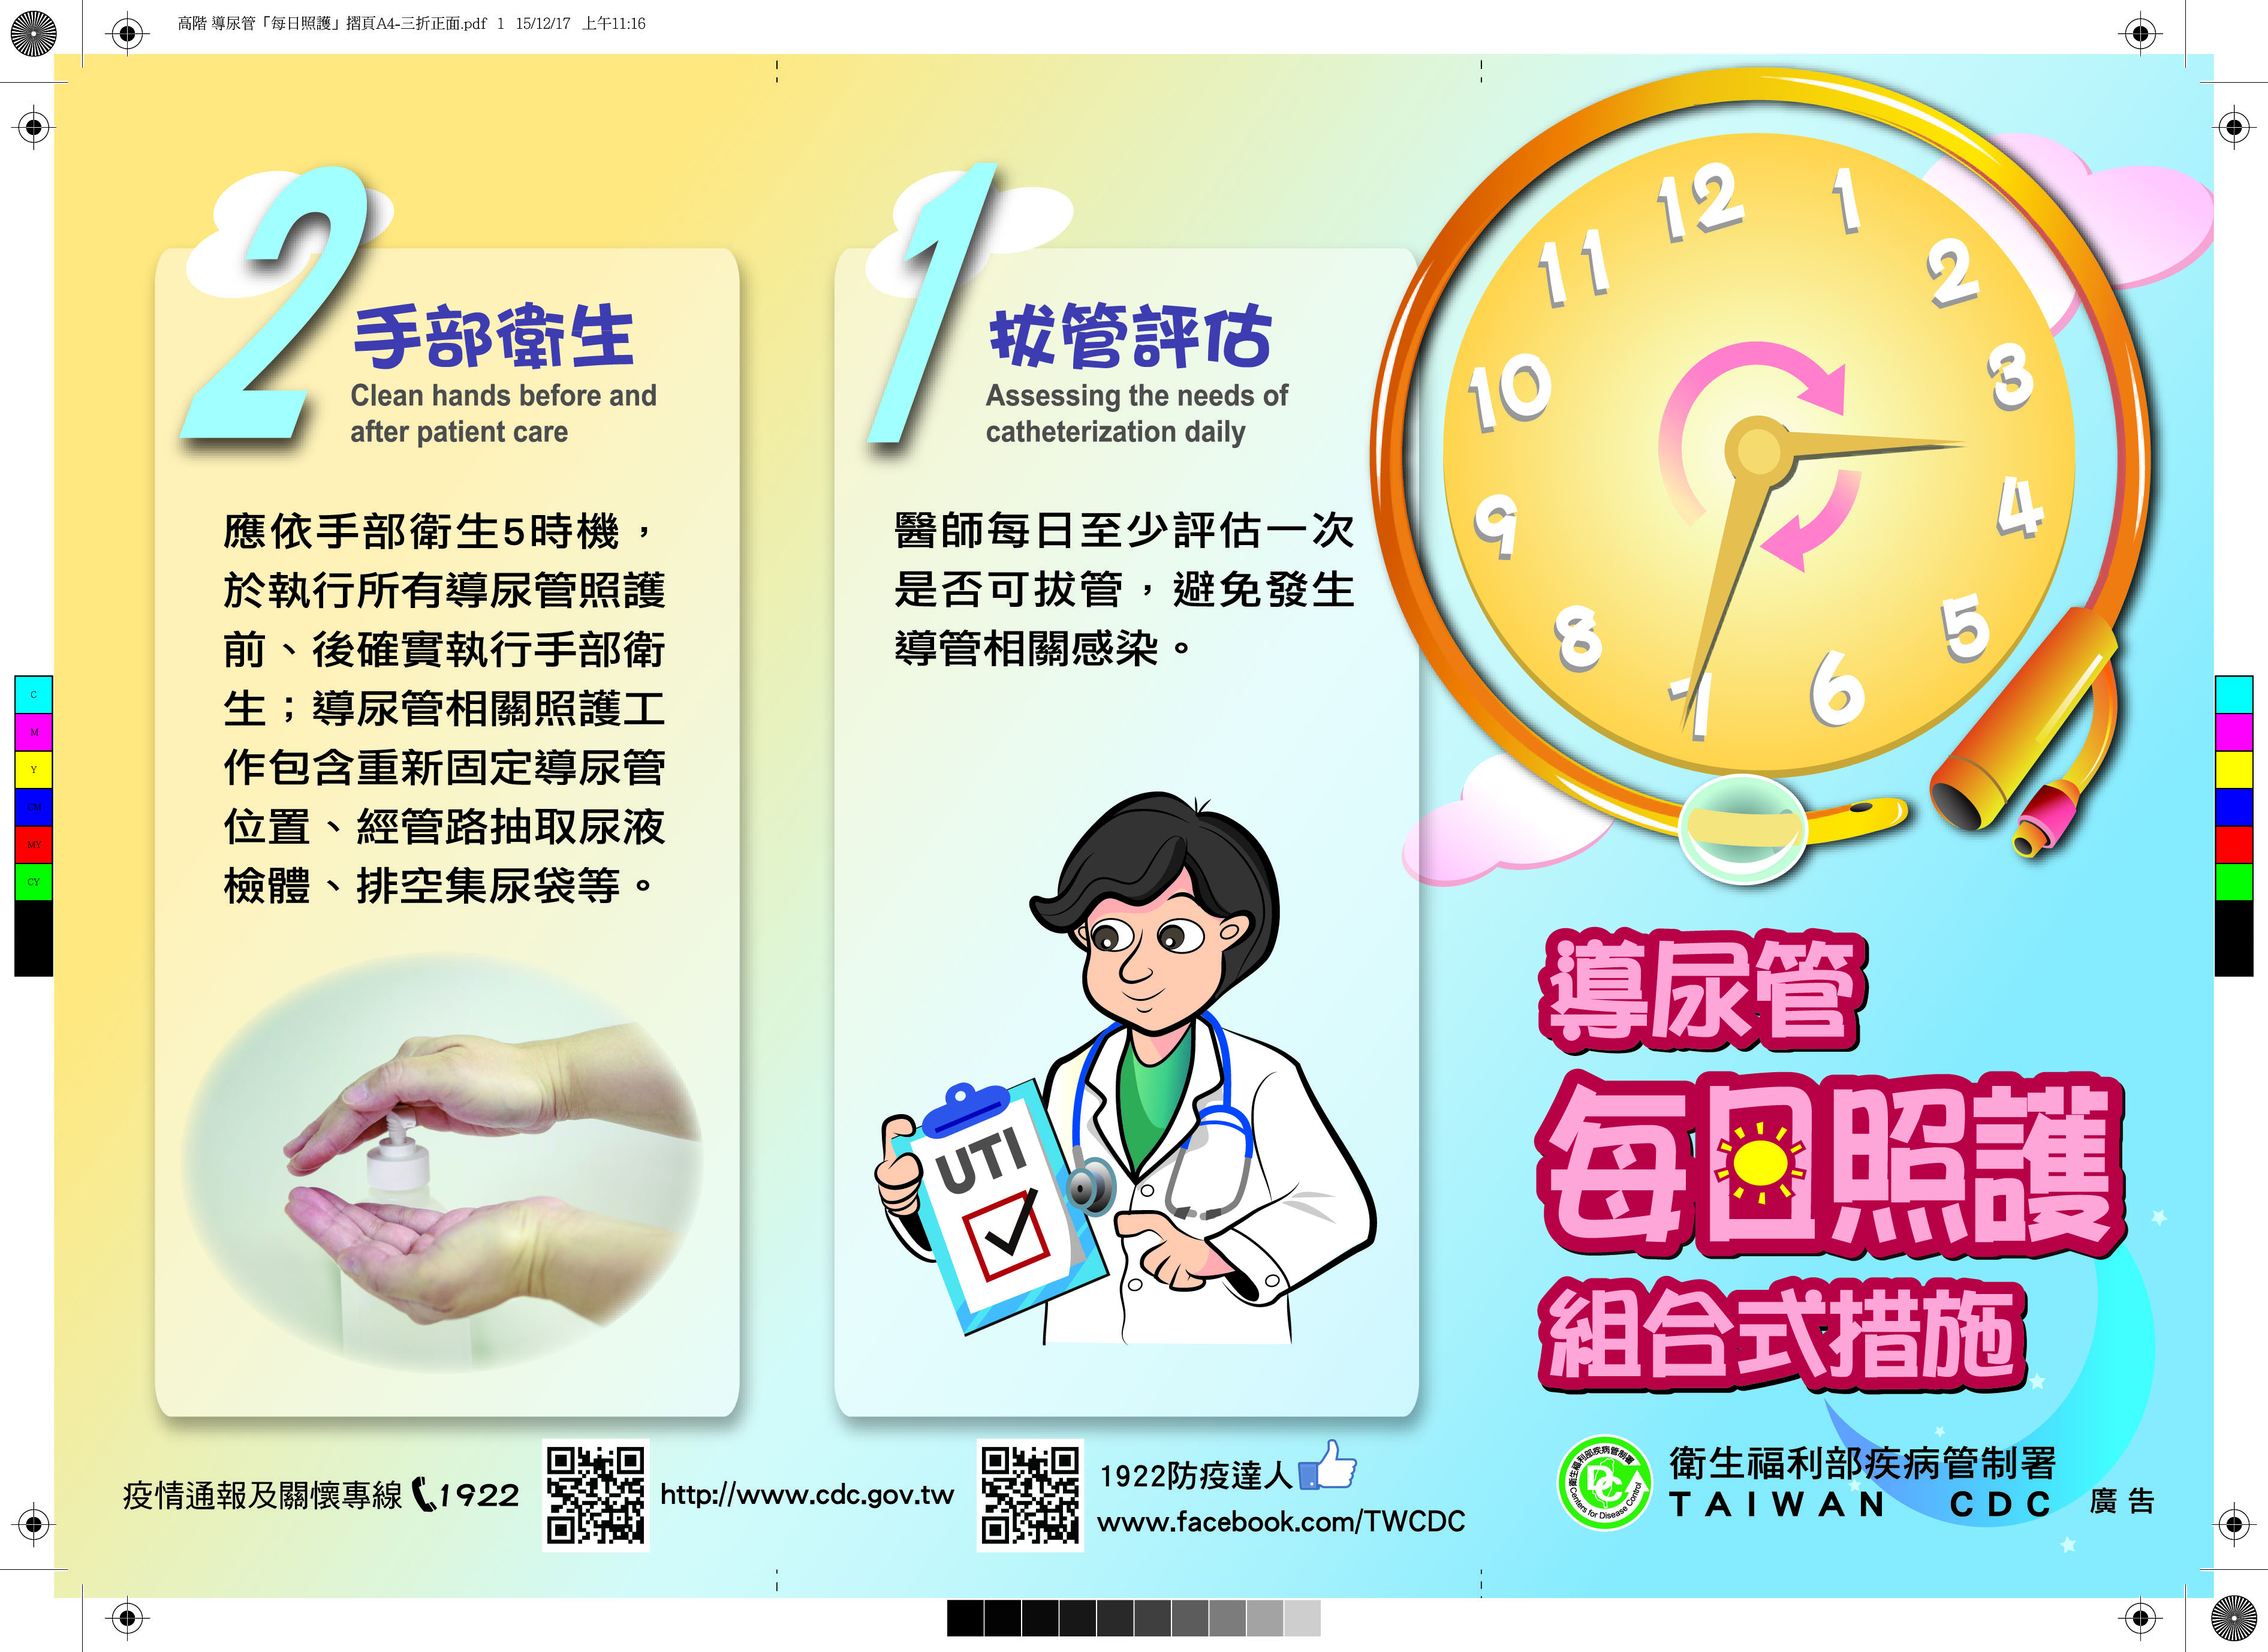 「導尿管每日照護組合視措施」衛教單張-(2015年製)